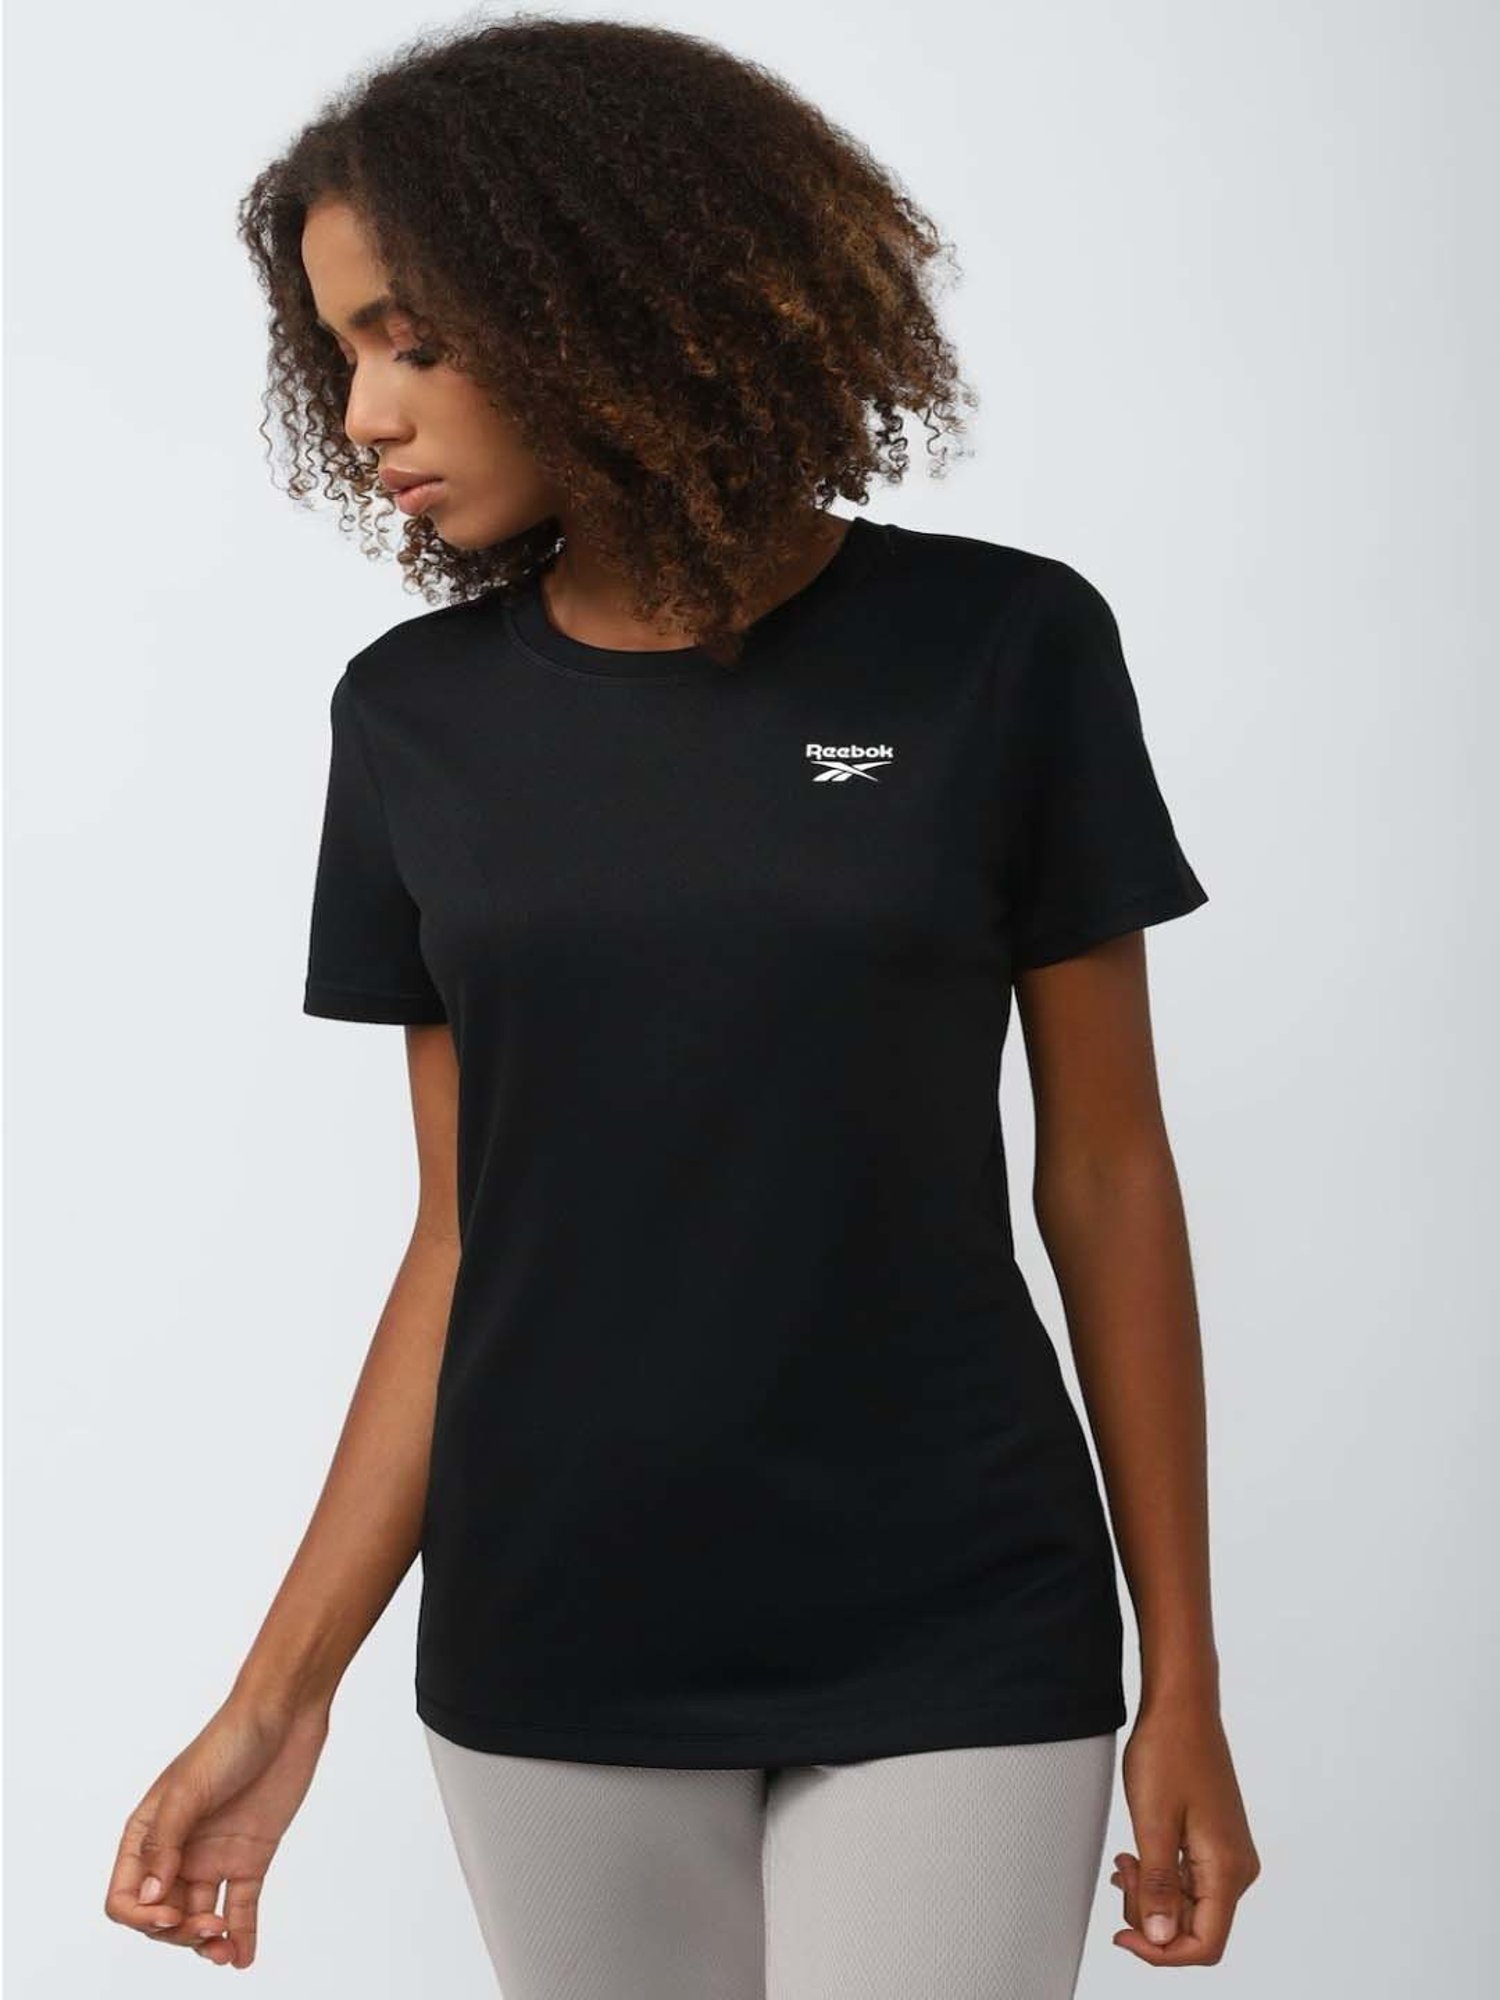 Reebok Black Slim Fit T-Shirt